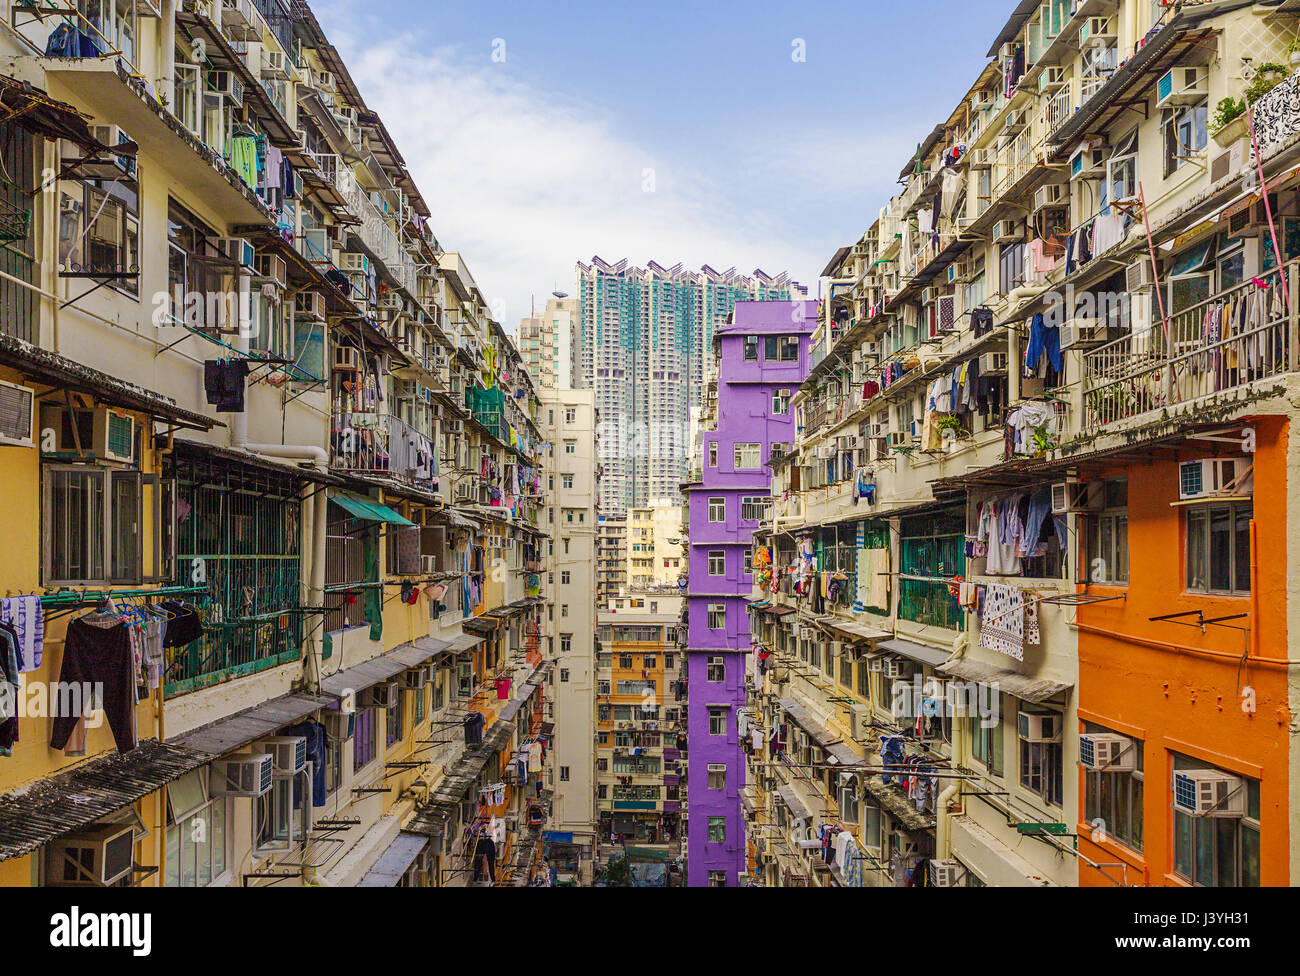 Alte Häuser umgeben moderne Wolkenkratzer in Hongkong. Hong Kong ist beliebtes Touristenziel von Asien und führender Finanzplatz der Welt. Stockfoto